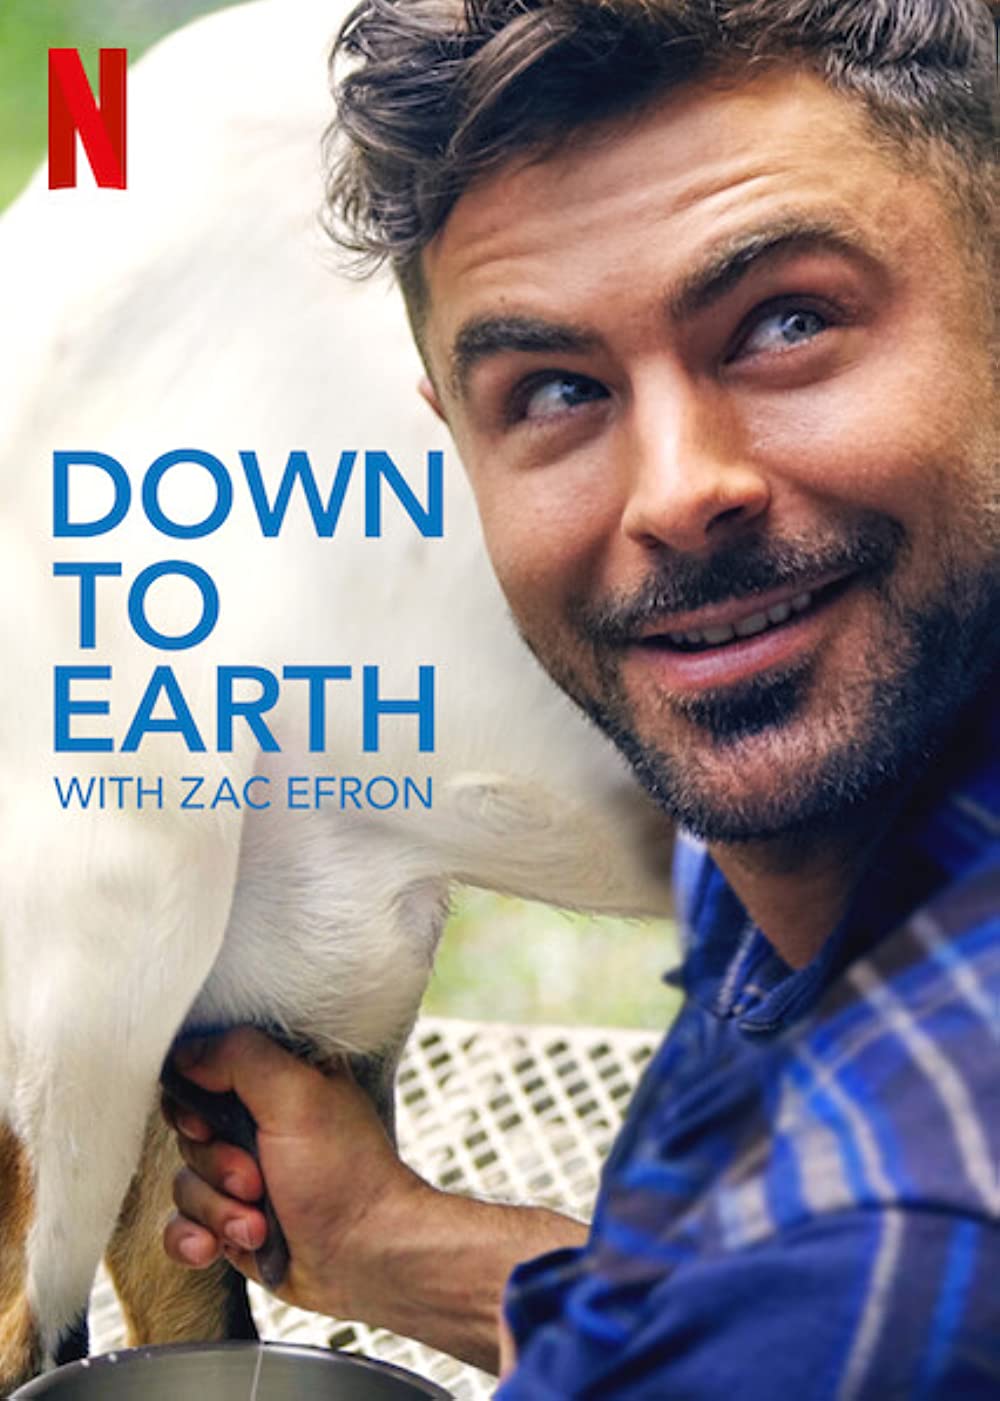 Filmbeschreibung zu Down to Earth with Zac Efron